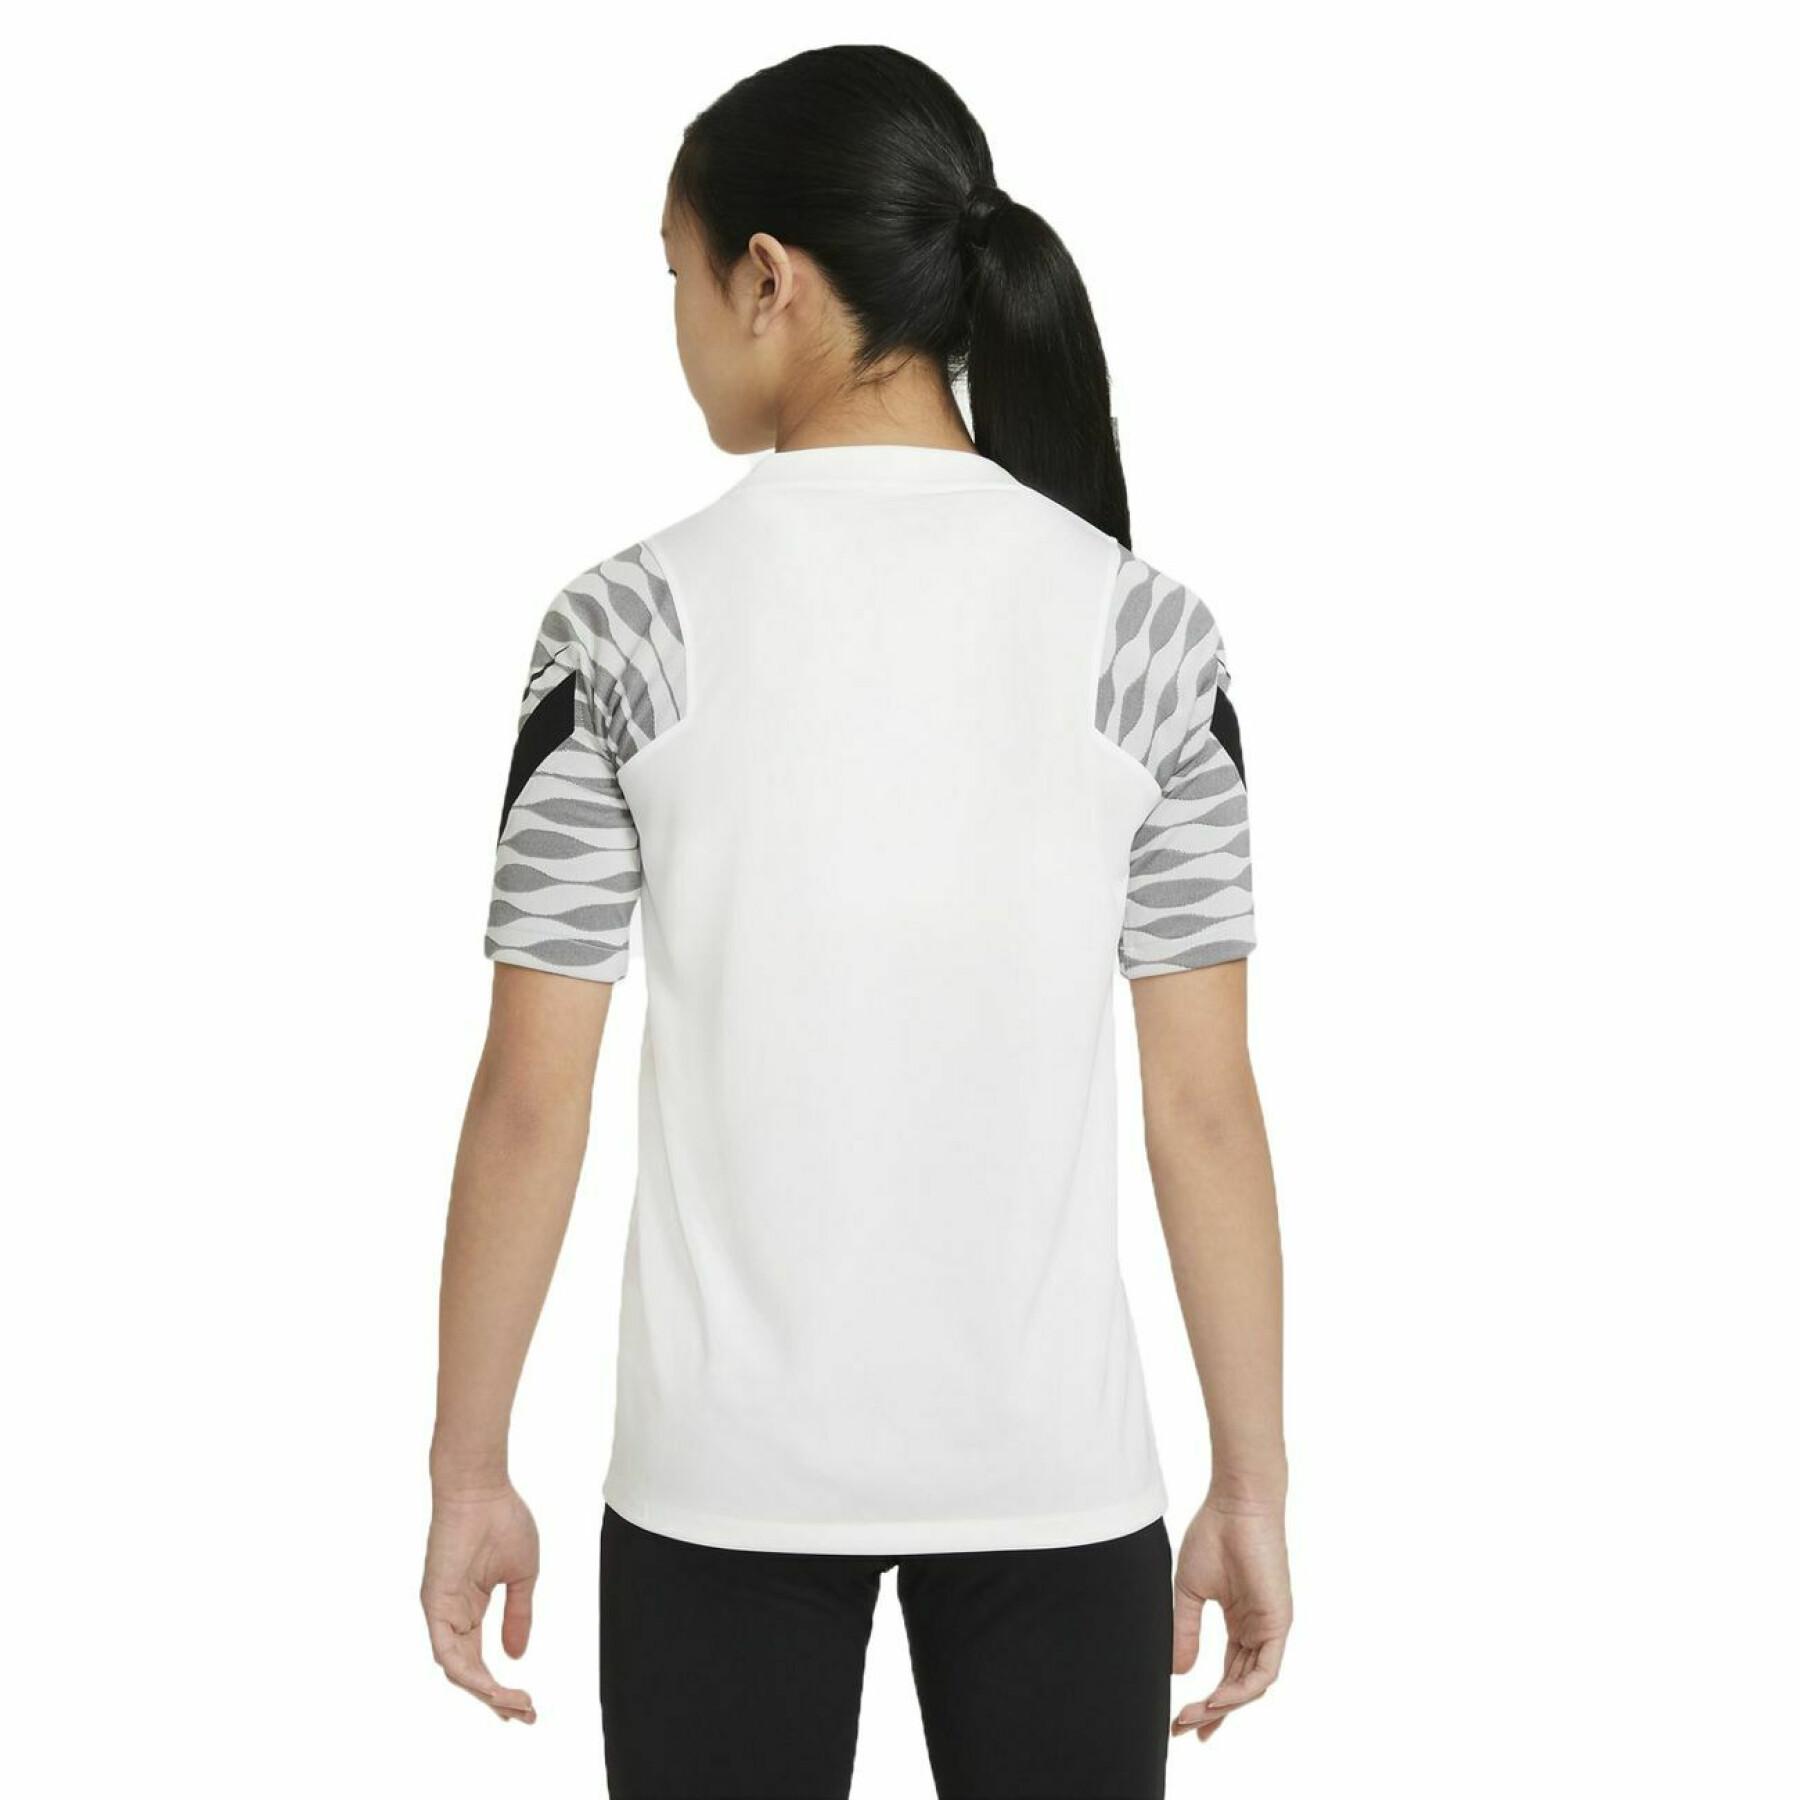 Koszulka dziecięca Nike Dynamic Fit StrikeE21